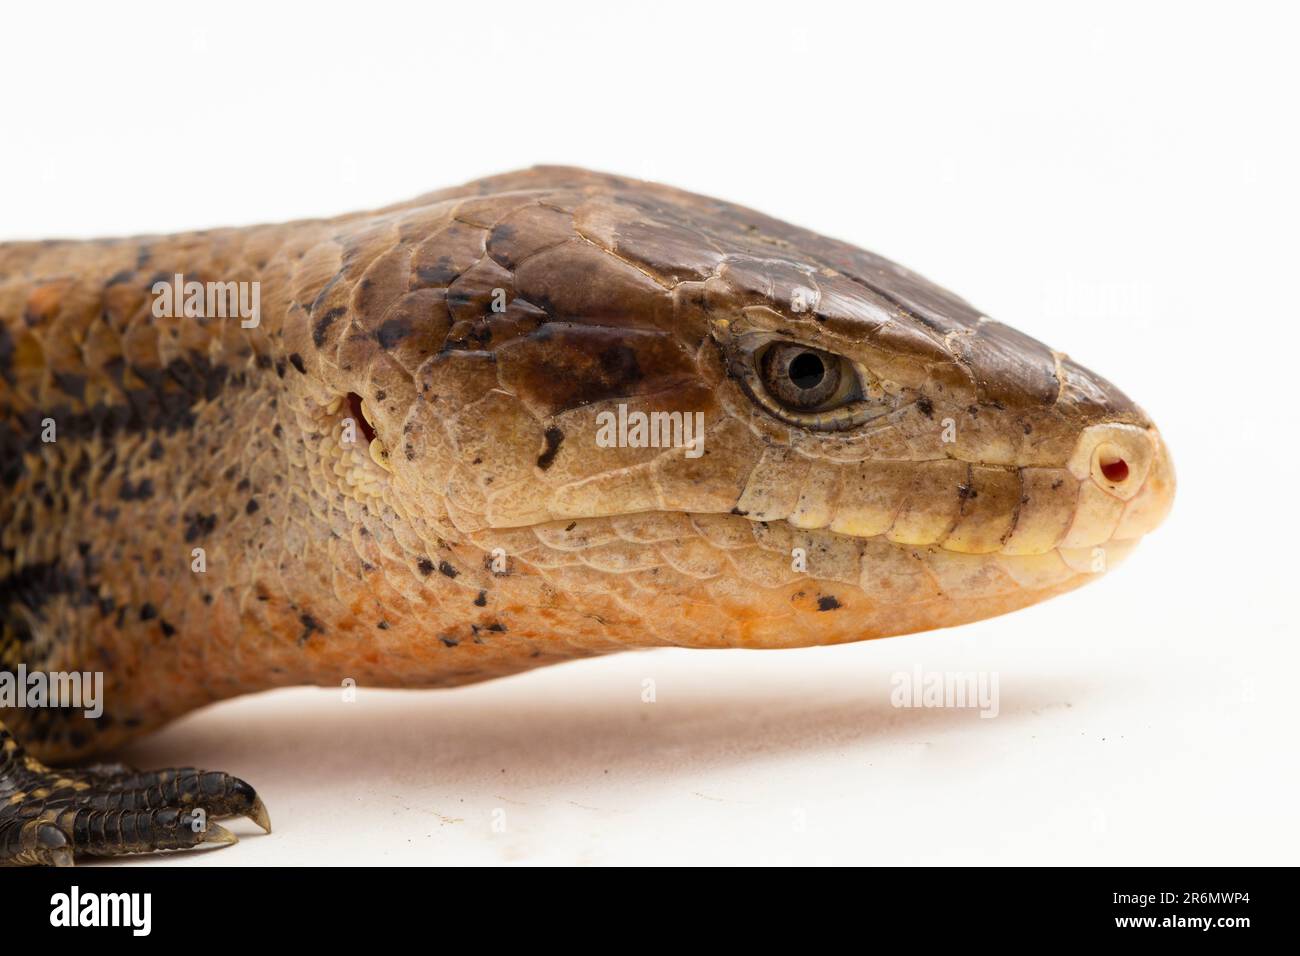 Giant blue-tongued skink lizard or Tiliqua gigas merauke isolated on white background Stock Photo